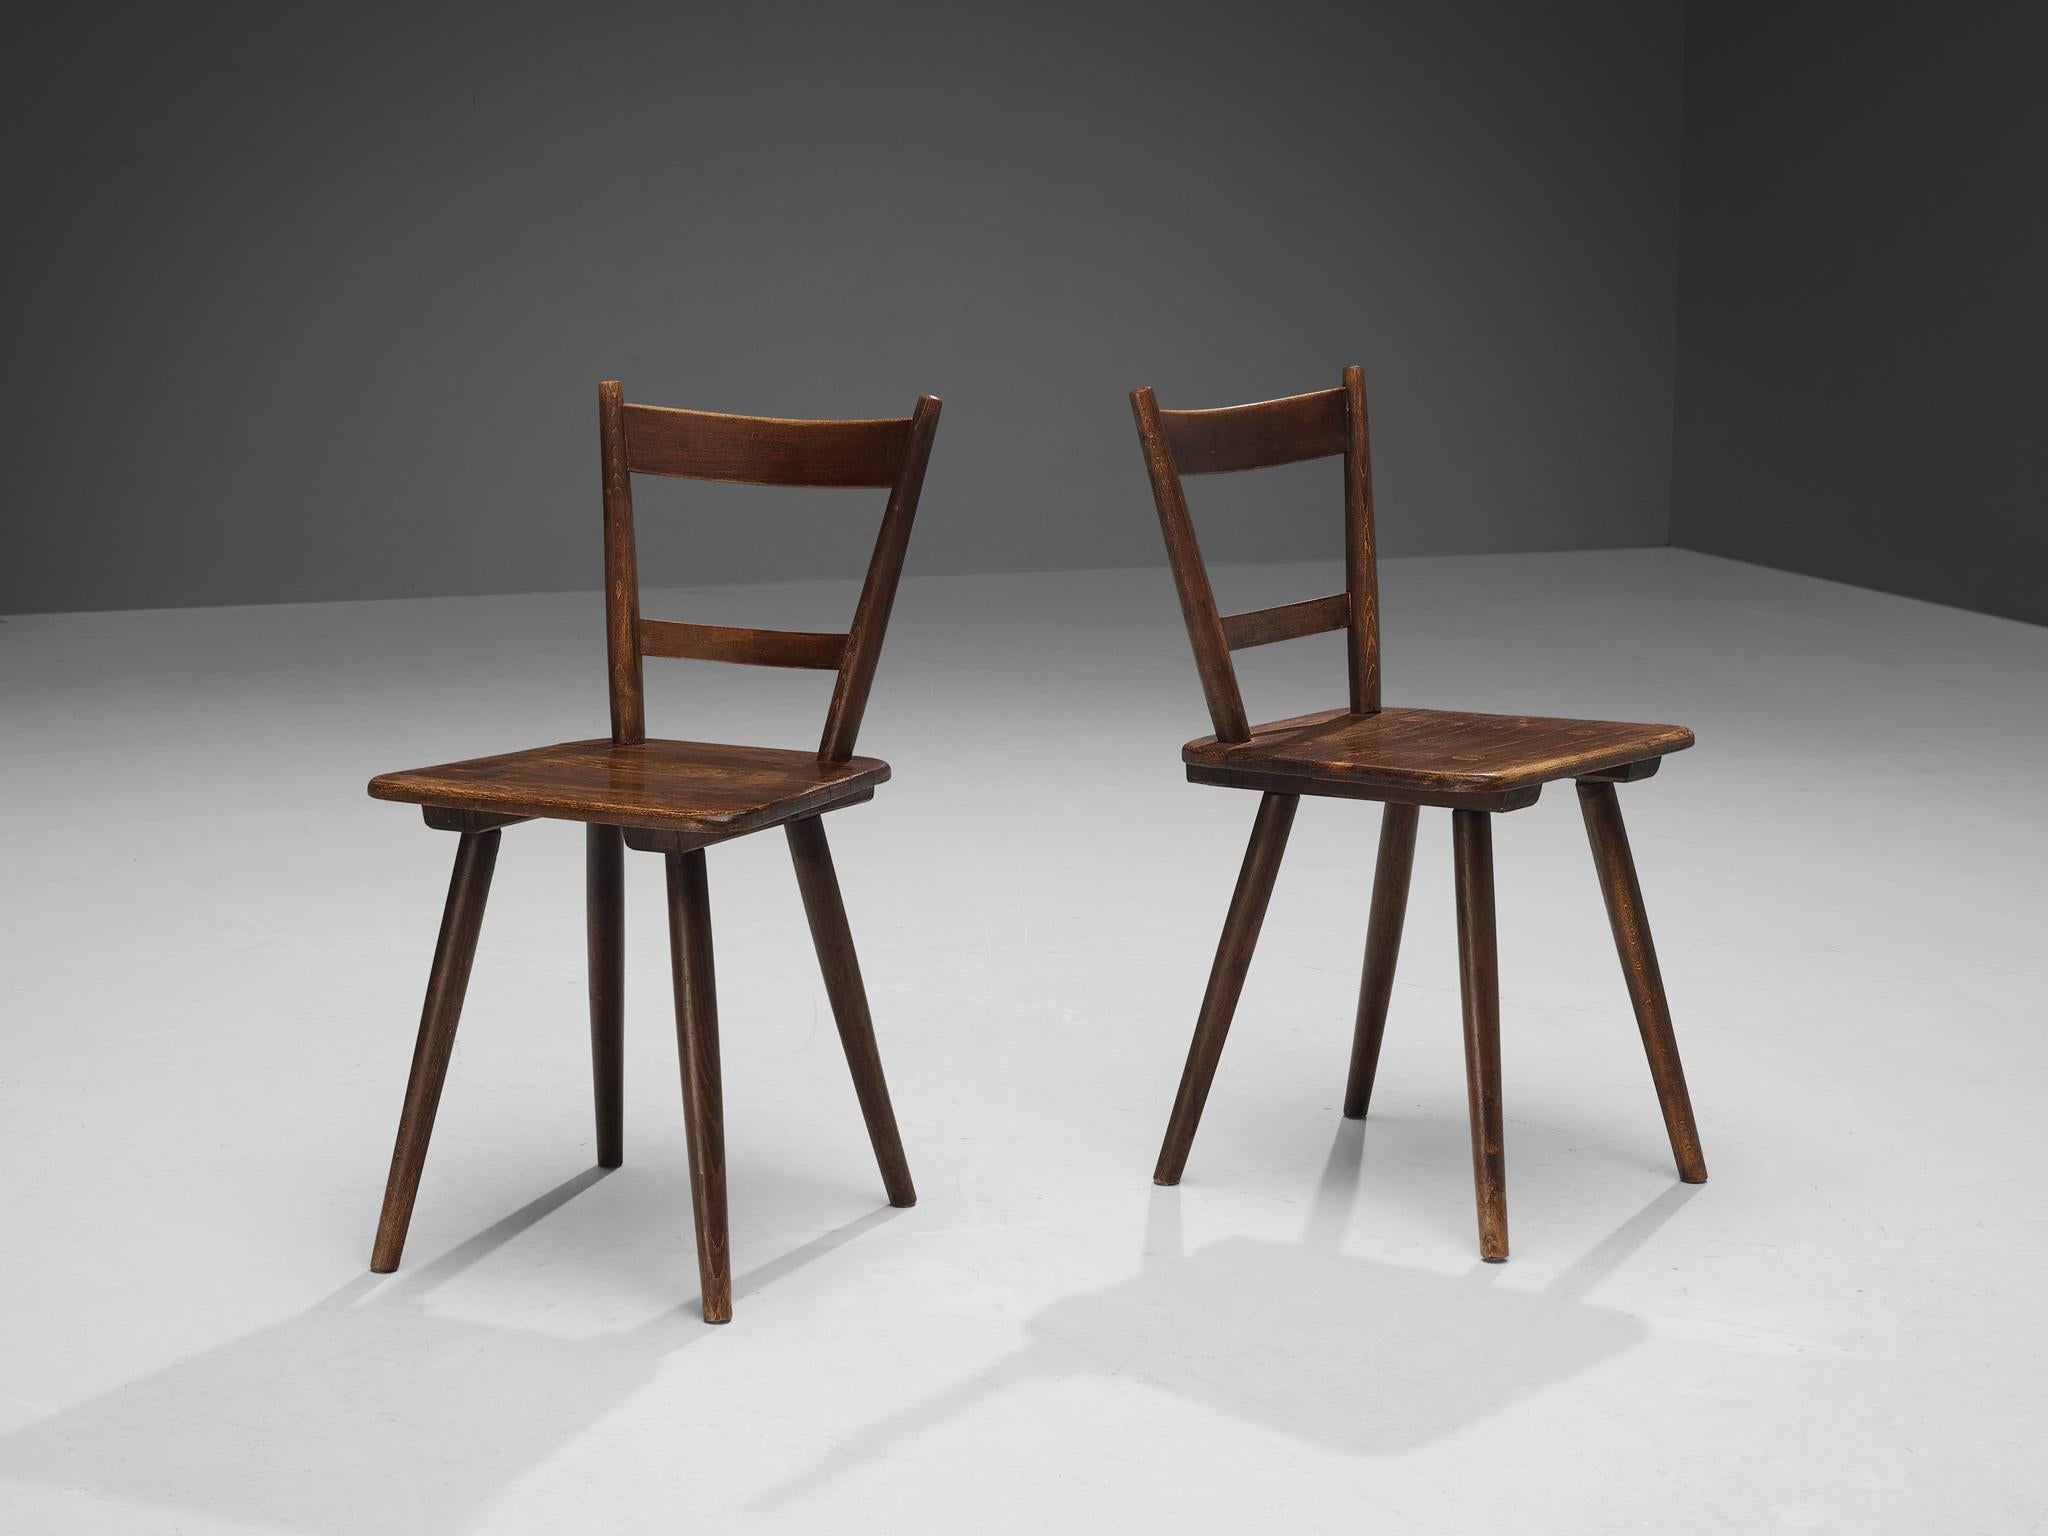 Chaises de salle à manger, bois teinté, France, fin des années 1940. 

Chaises de salle à manger rustiques fabriquées en France. Simples mais élégantes, ces chaises présentent un cadre modeste avec des éléments épurés et élégants. Notez par exemple